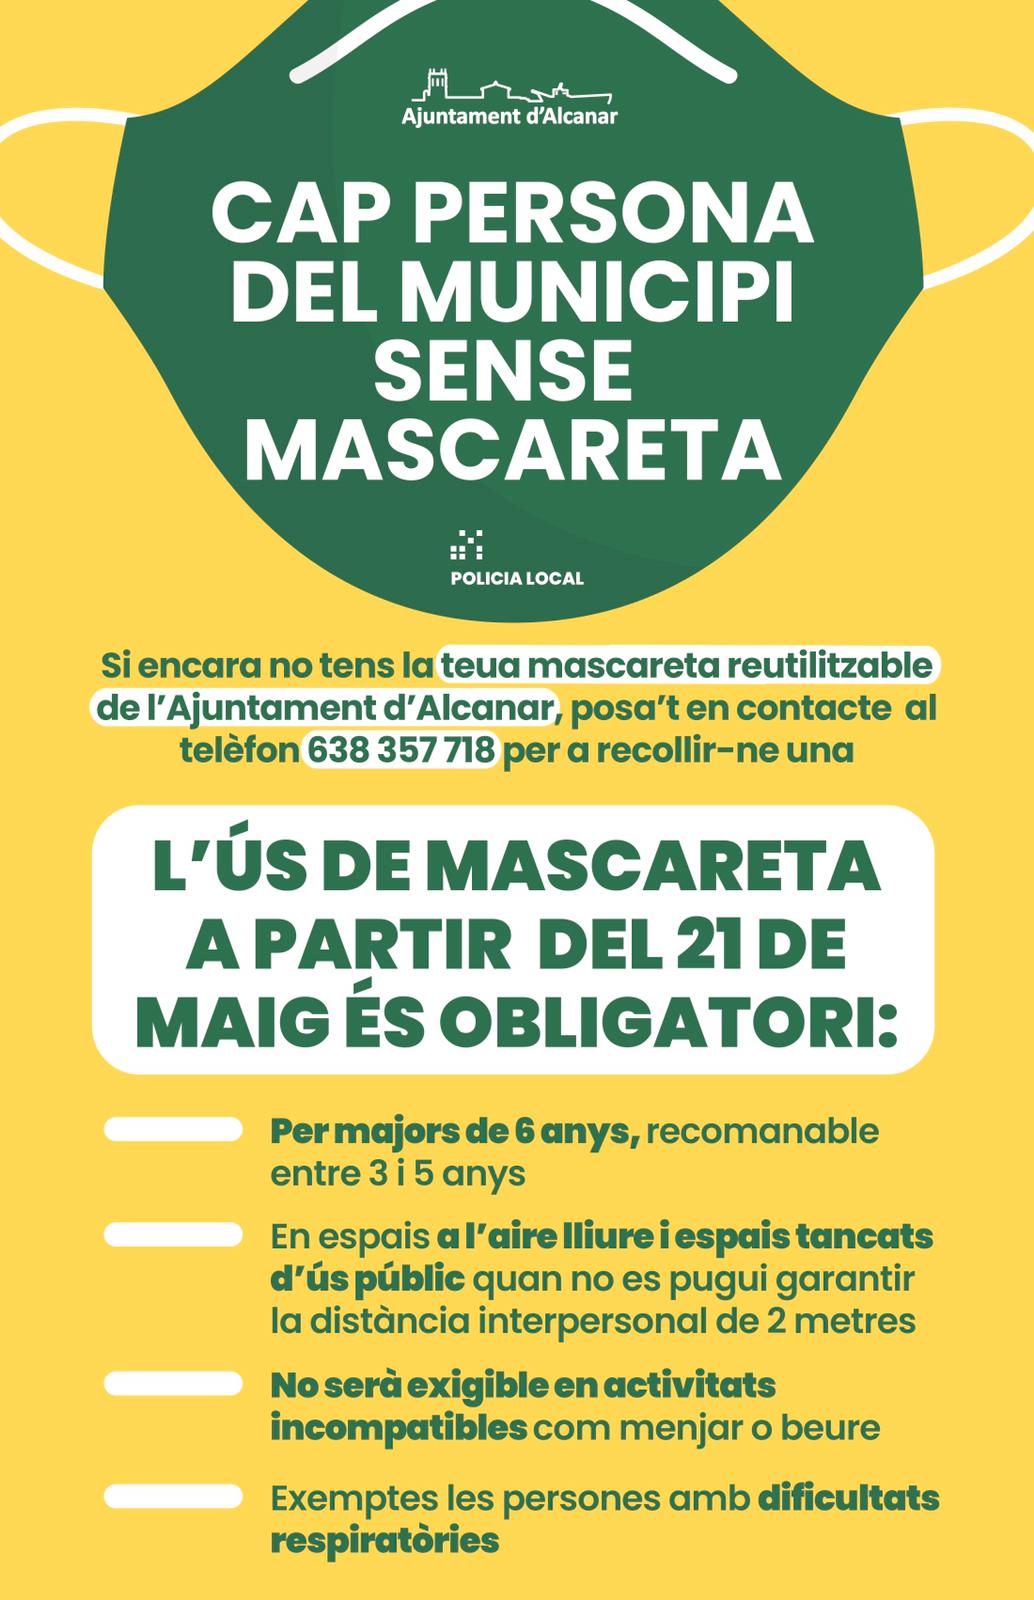 L'Ajuntament d'Alcanar proveirà de mascareta a totes les persones del municipi